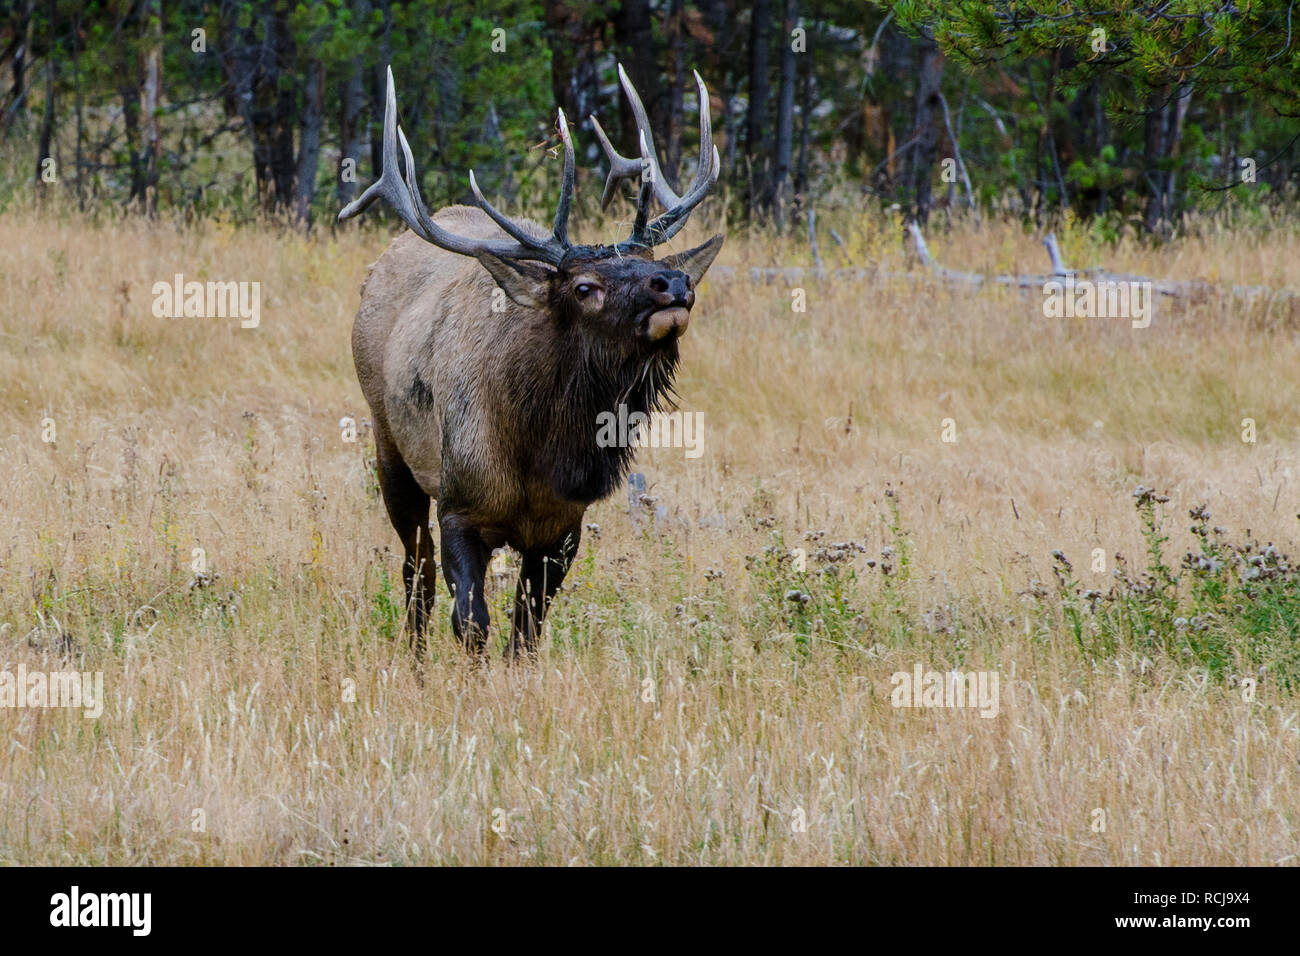 Bull Elk (Wapiti) in Yellowstone National Park, Wyoming, United States Stock Photo